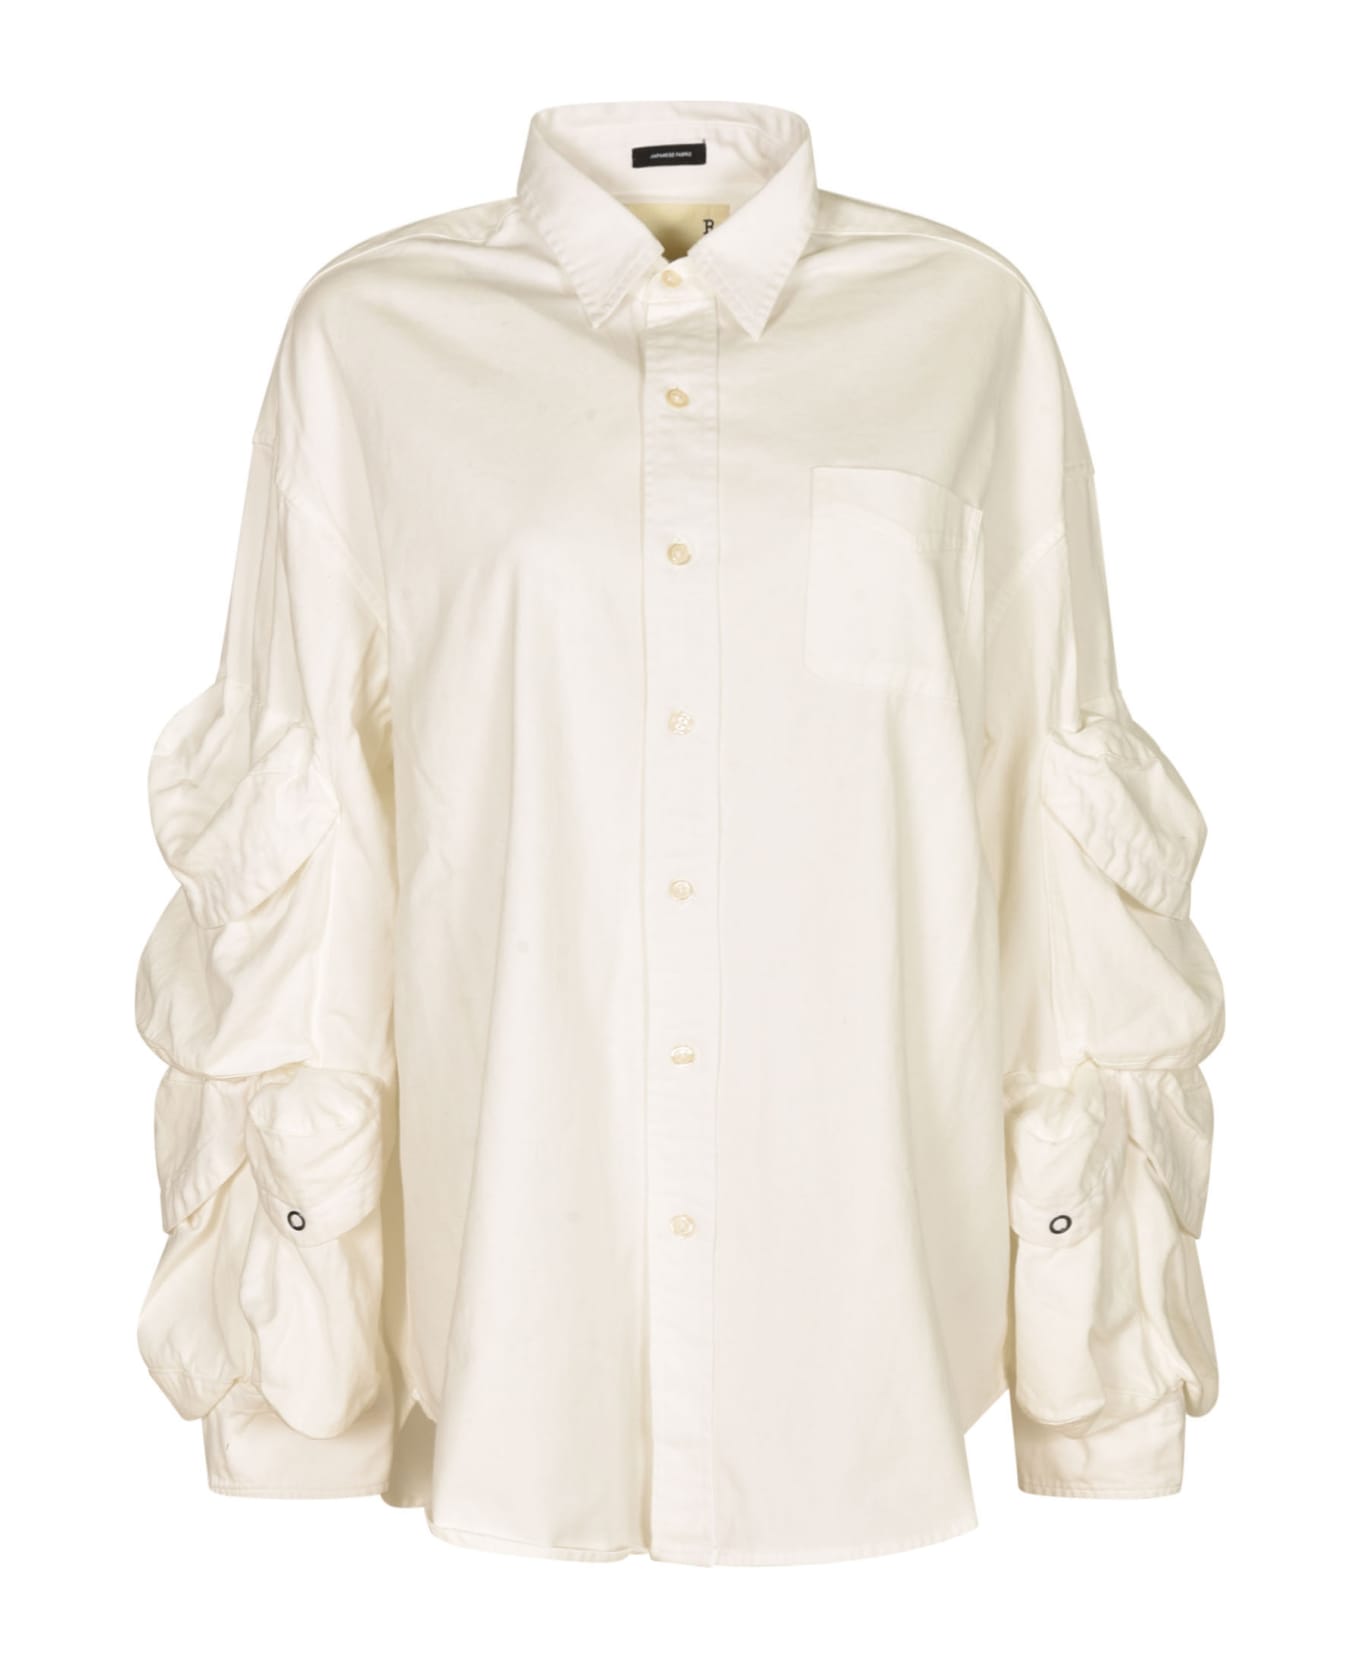 R13 Multi-pocket Button Down Shirt - White